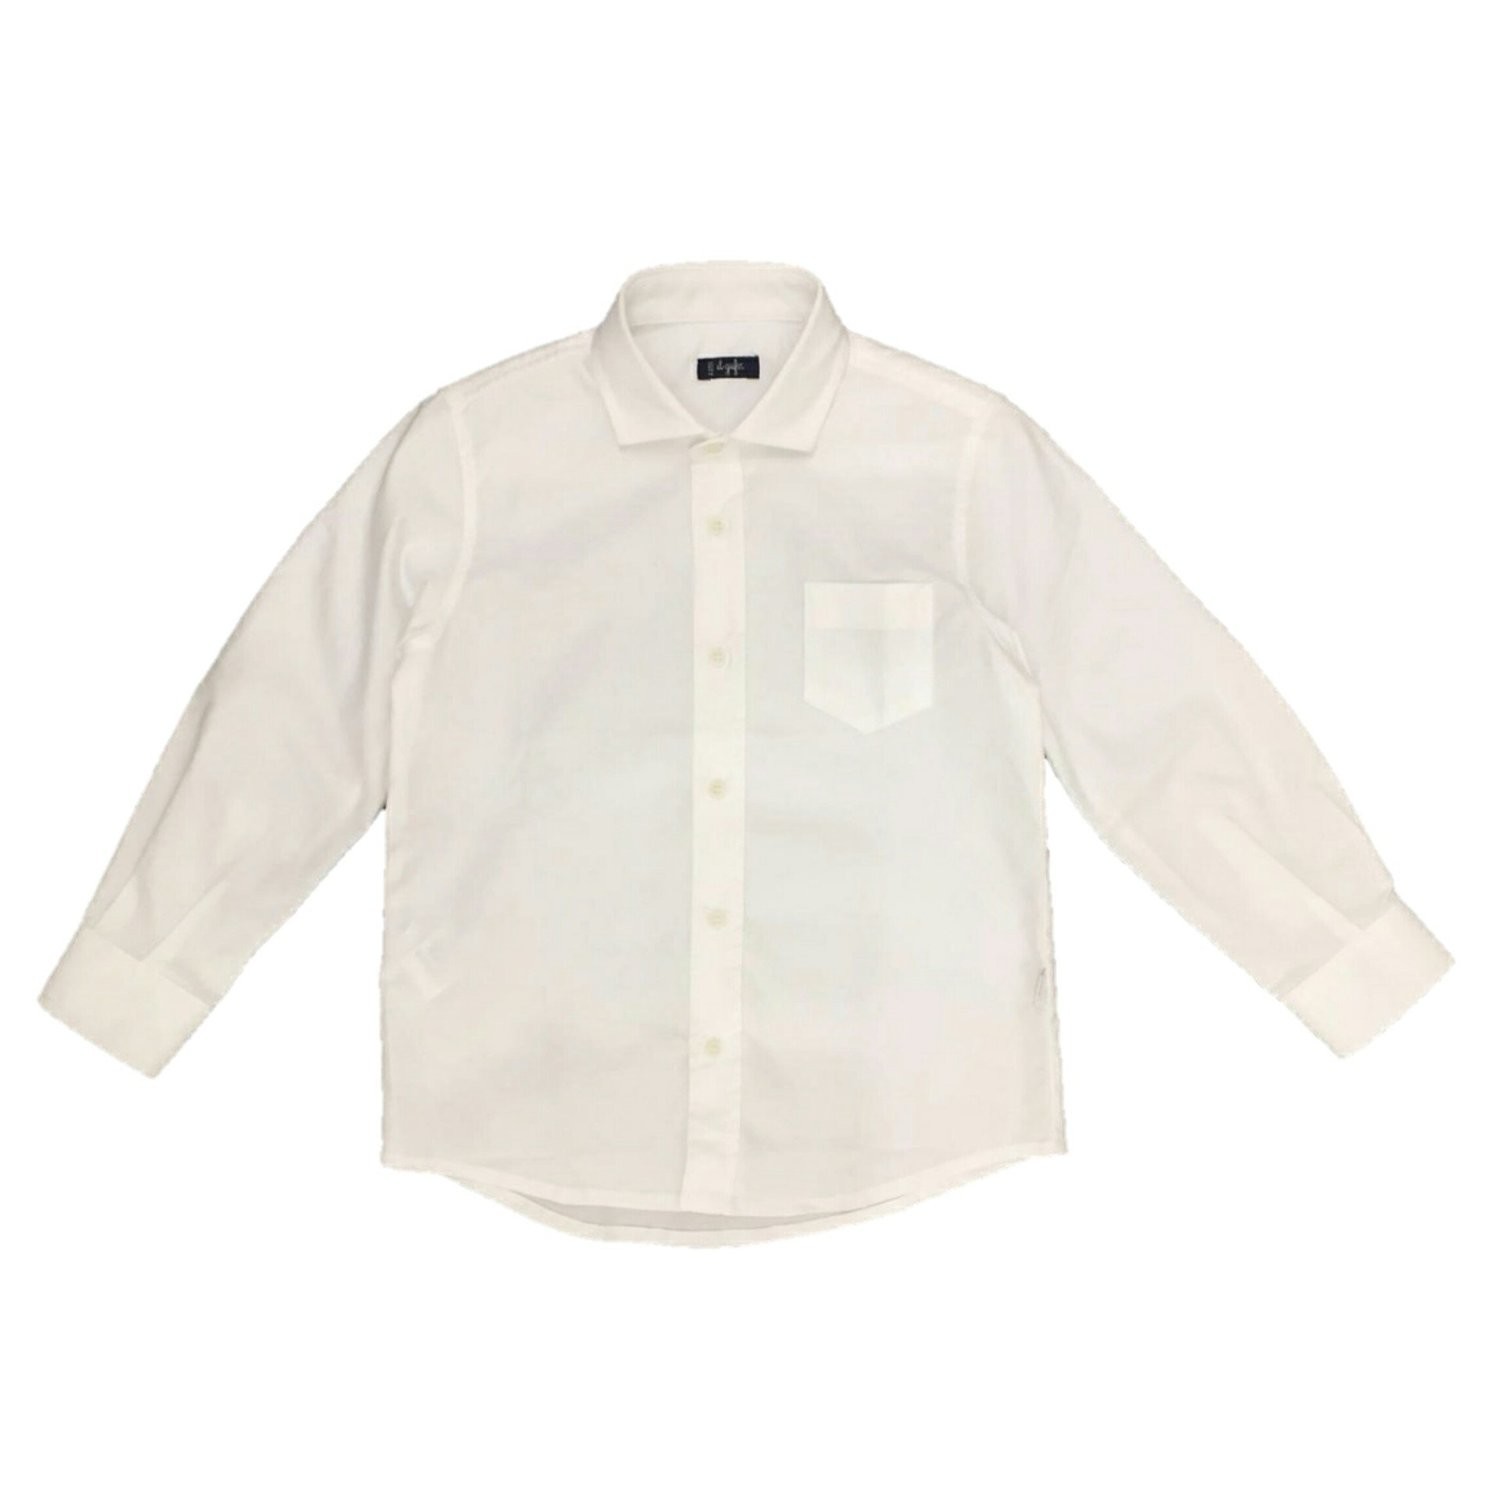 Il Gufo - Camicia bianca, Size: 2 anni